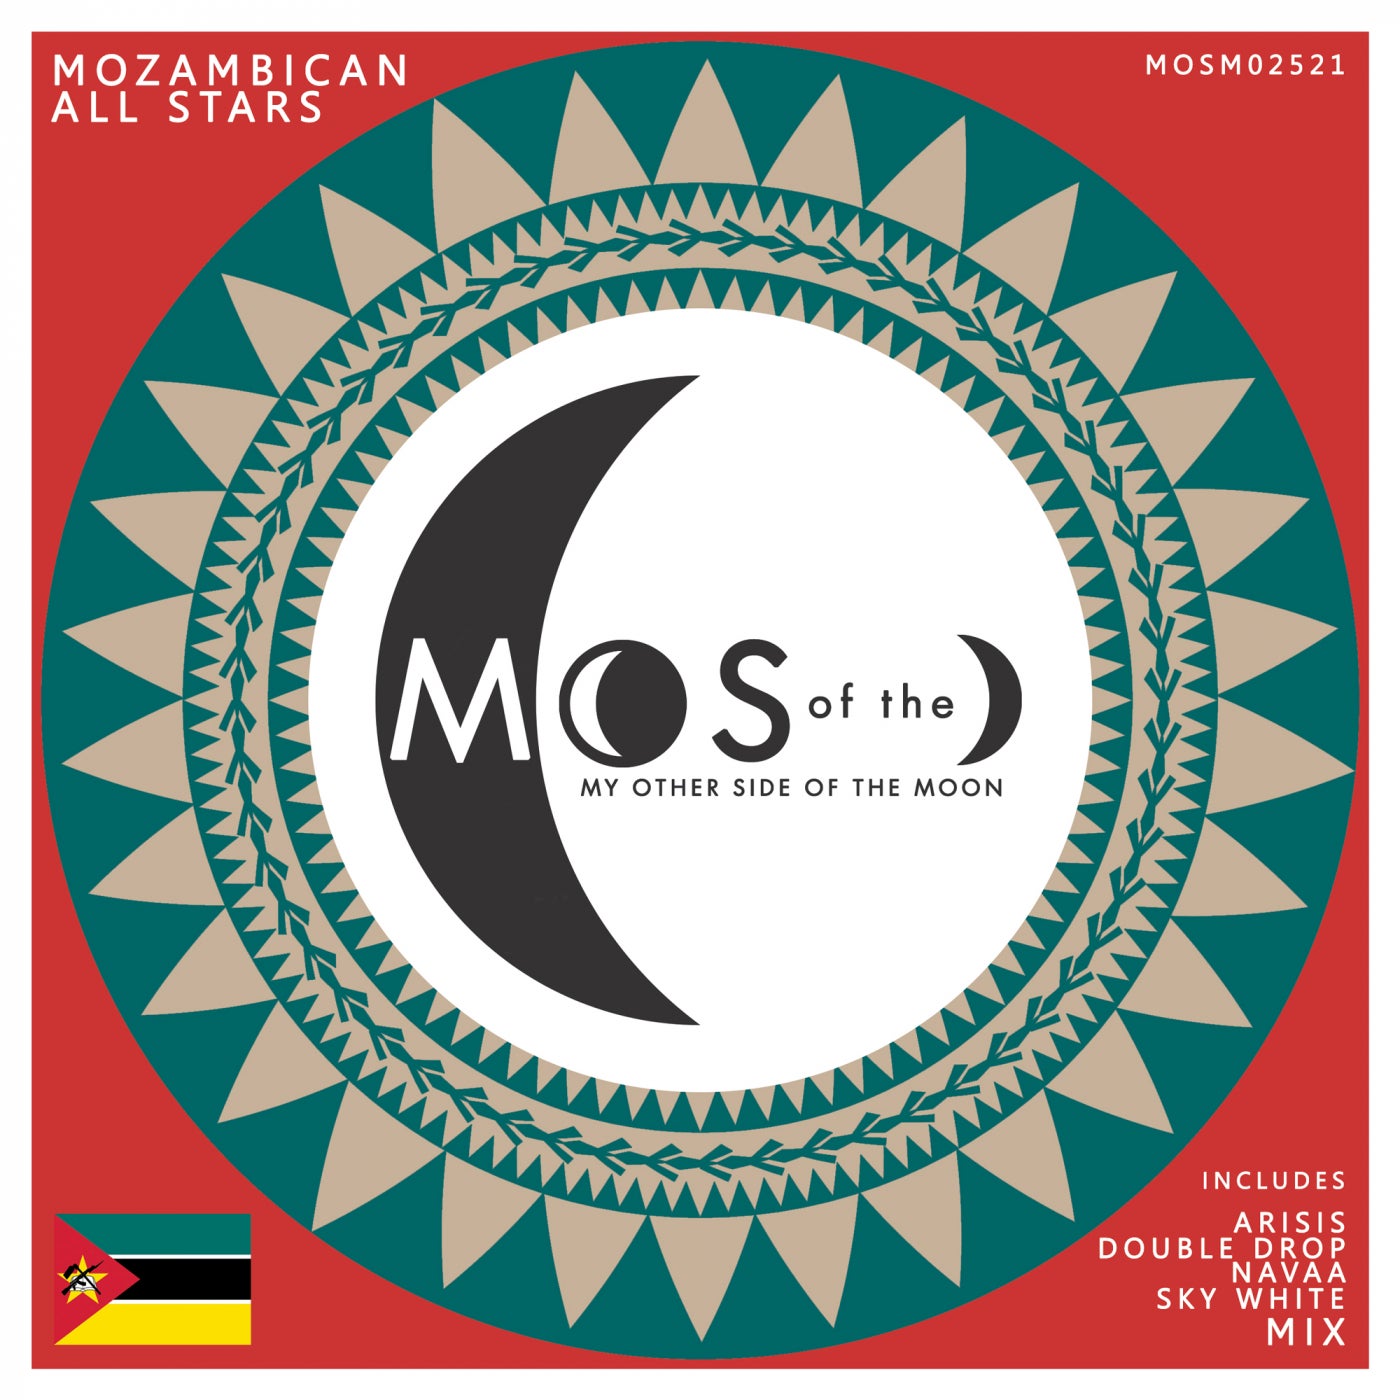 VA - Mozambican All Stars [MOSM02521]